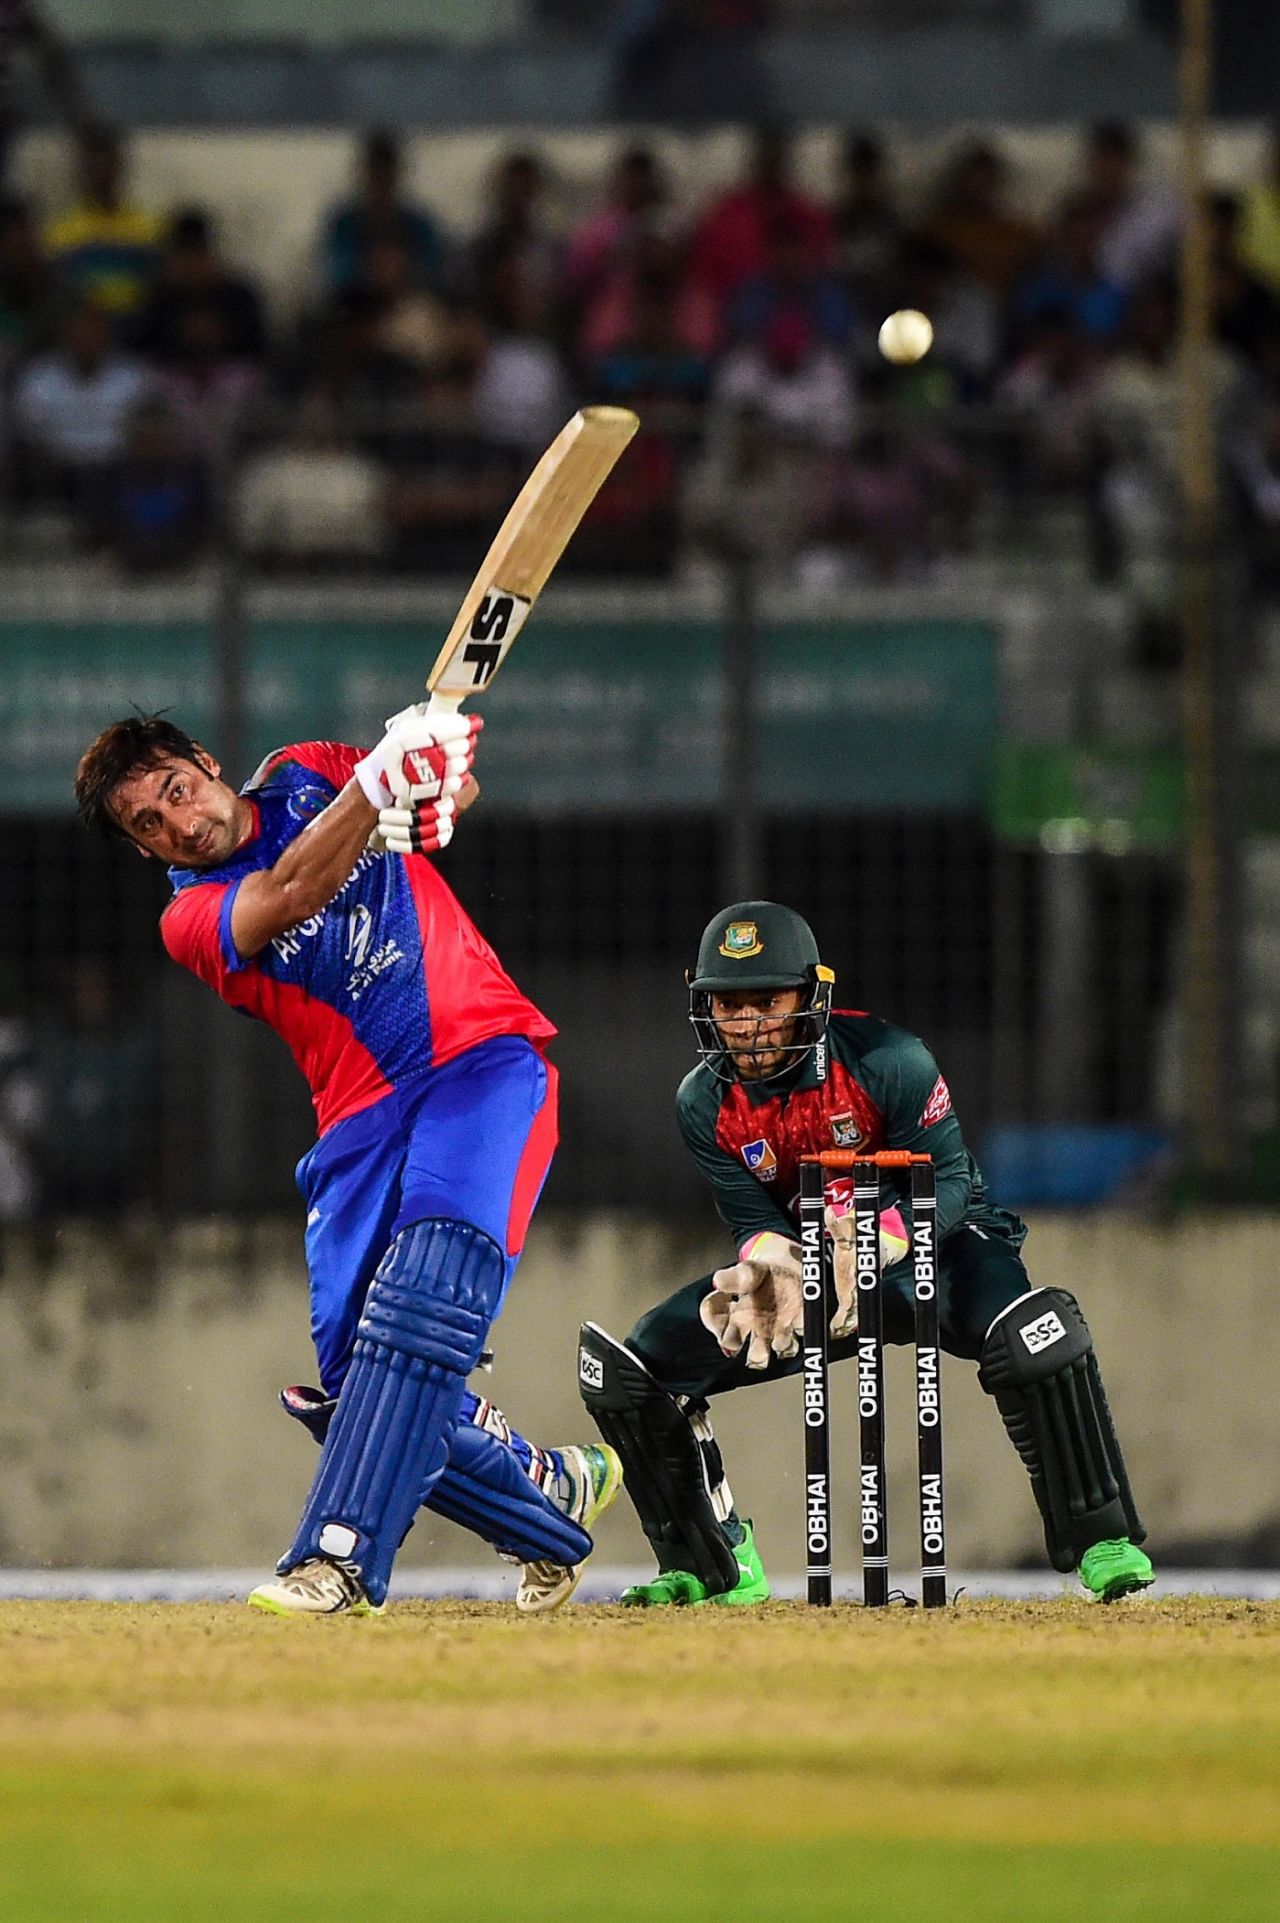 Asghar Afghan belts it over the top, Bangladesh v Afghanistan, T20I tri-series, Dhaka, September 15, 2019